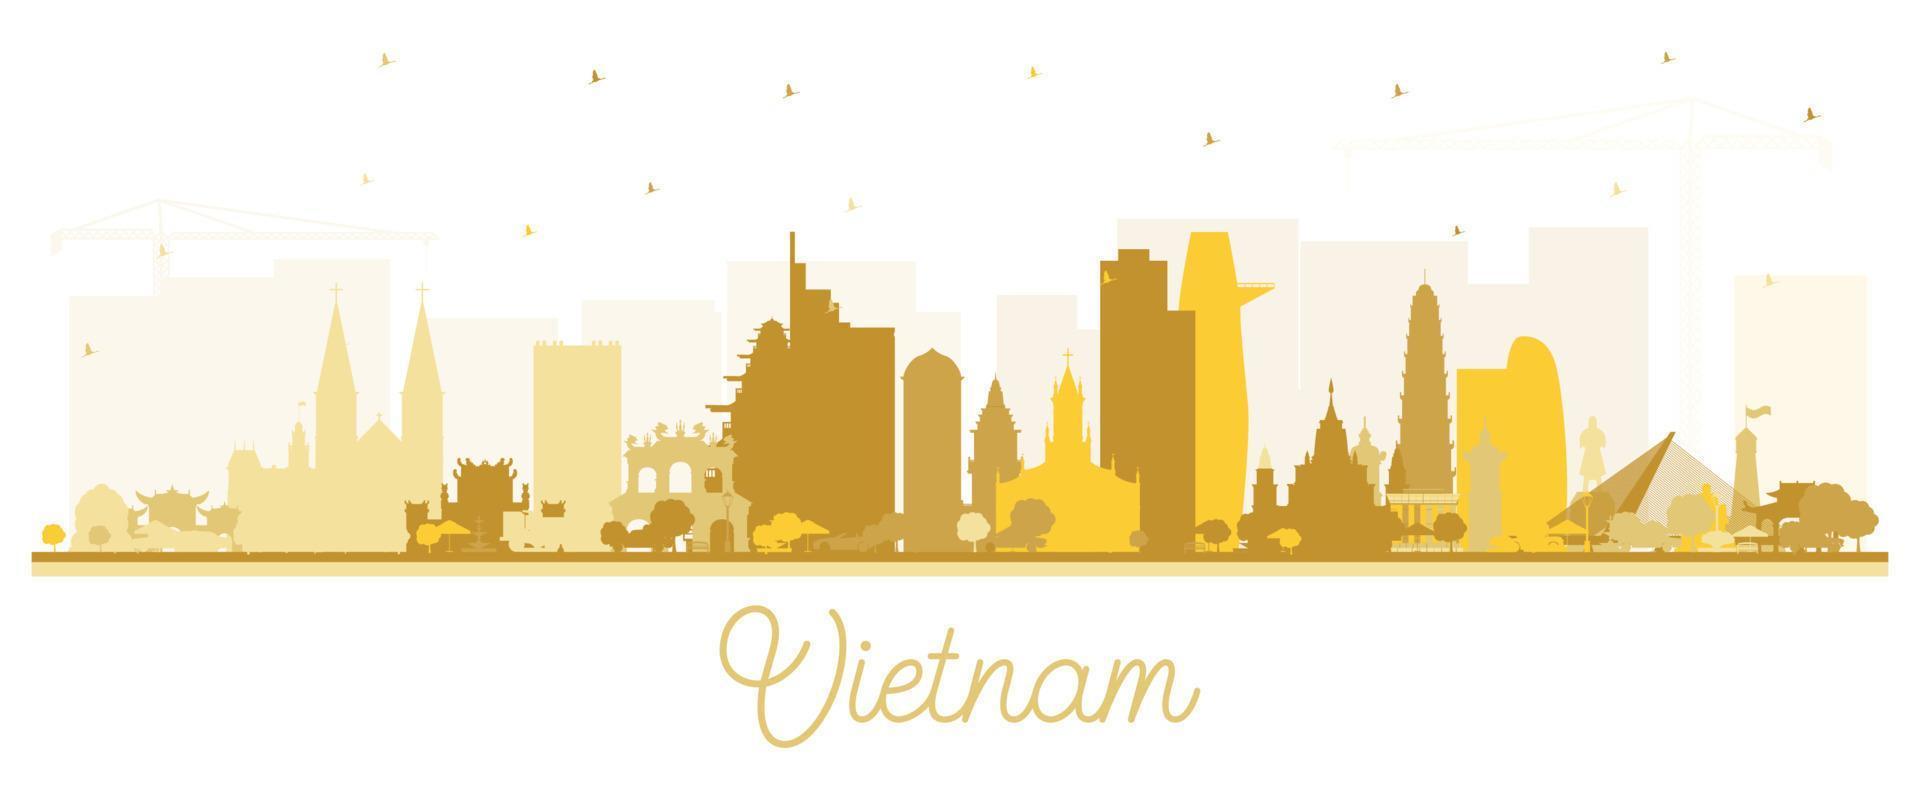 vietnam city skyline silhouette mit goldenen gebäuden isoliert auf weiß. vektor